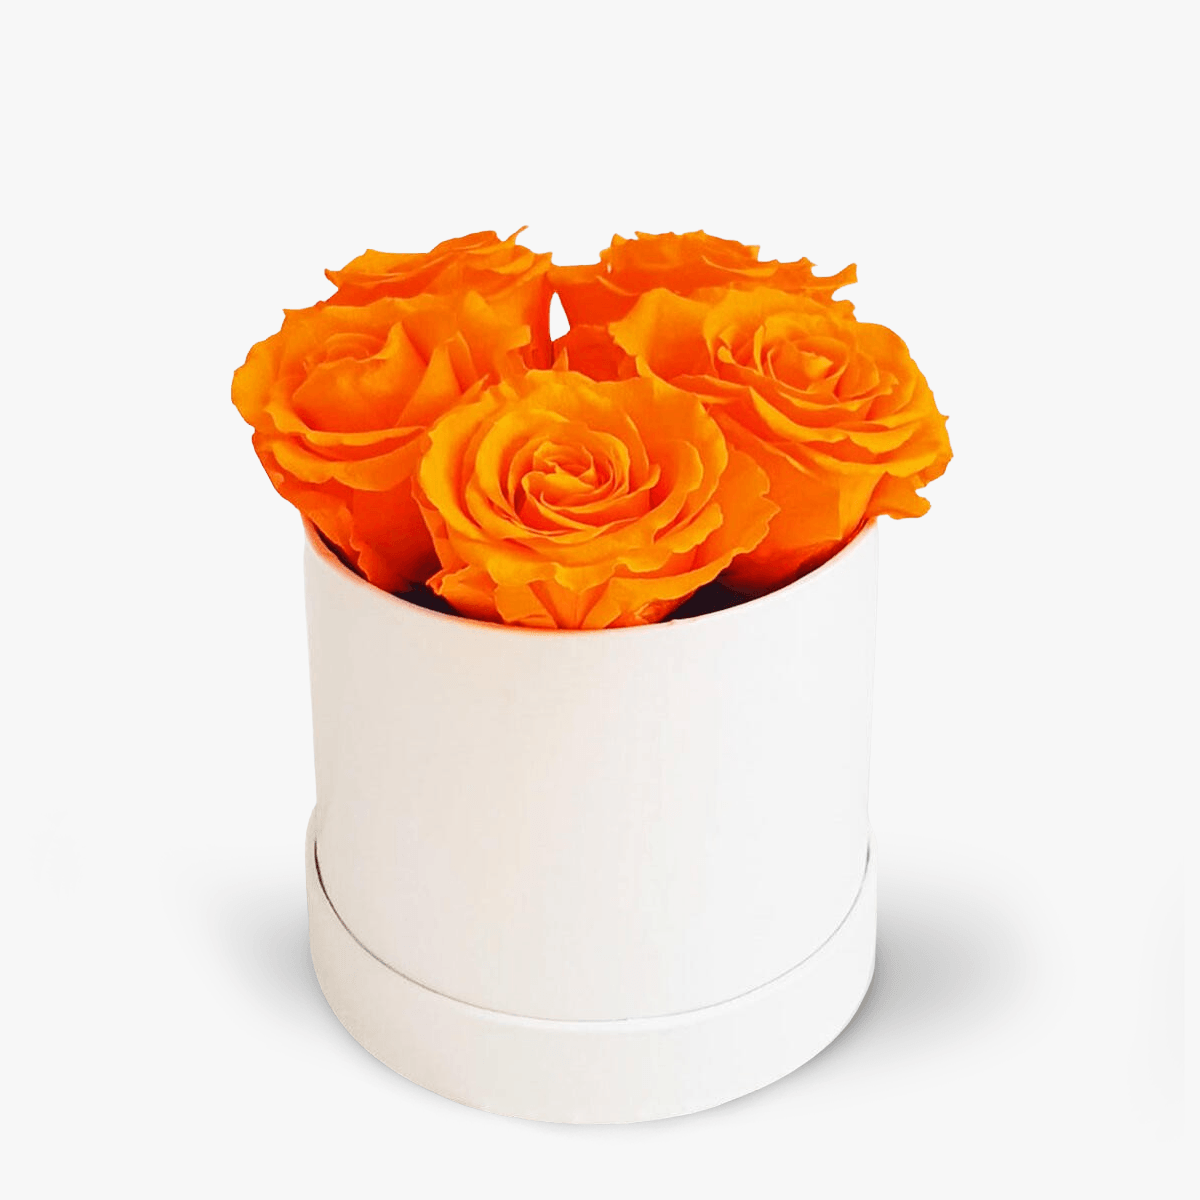 Cutie 5 trandafiri criogenati portocalii – Standard criogenati imagine 2022